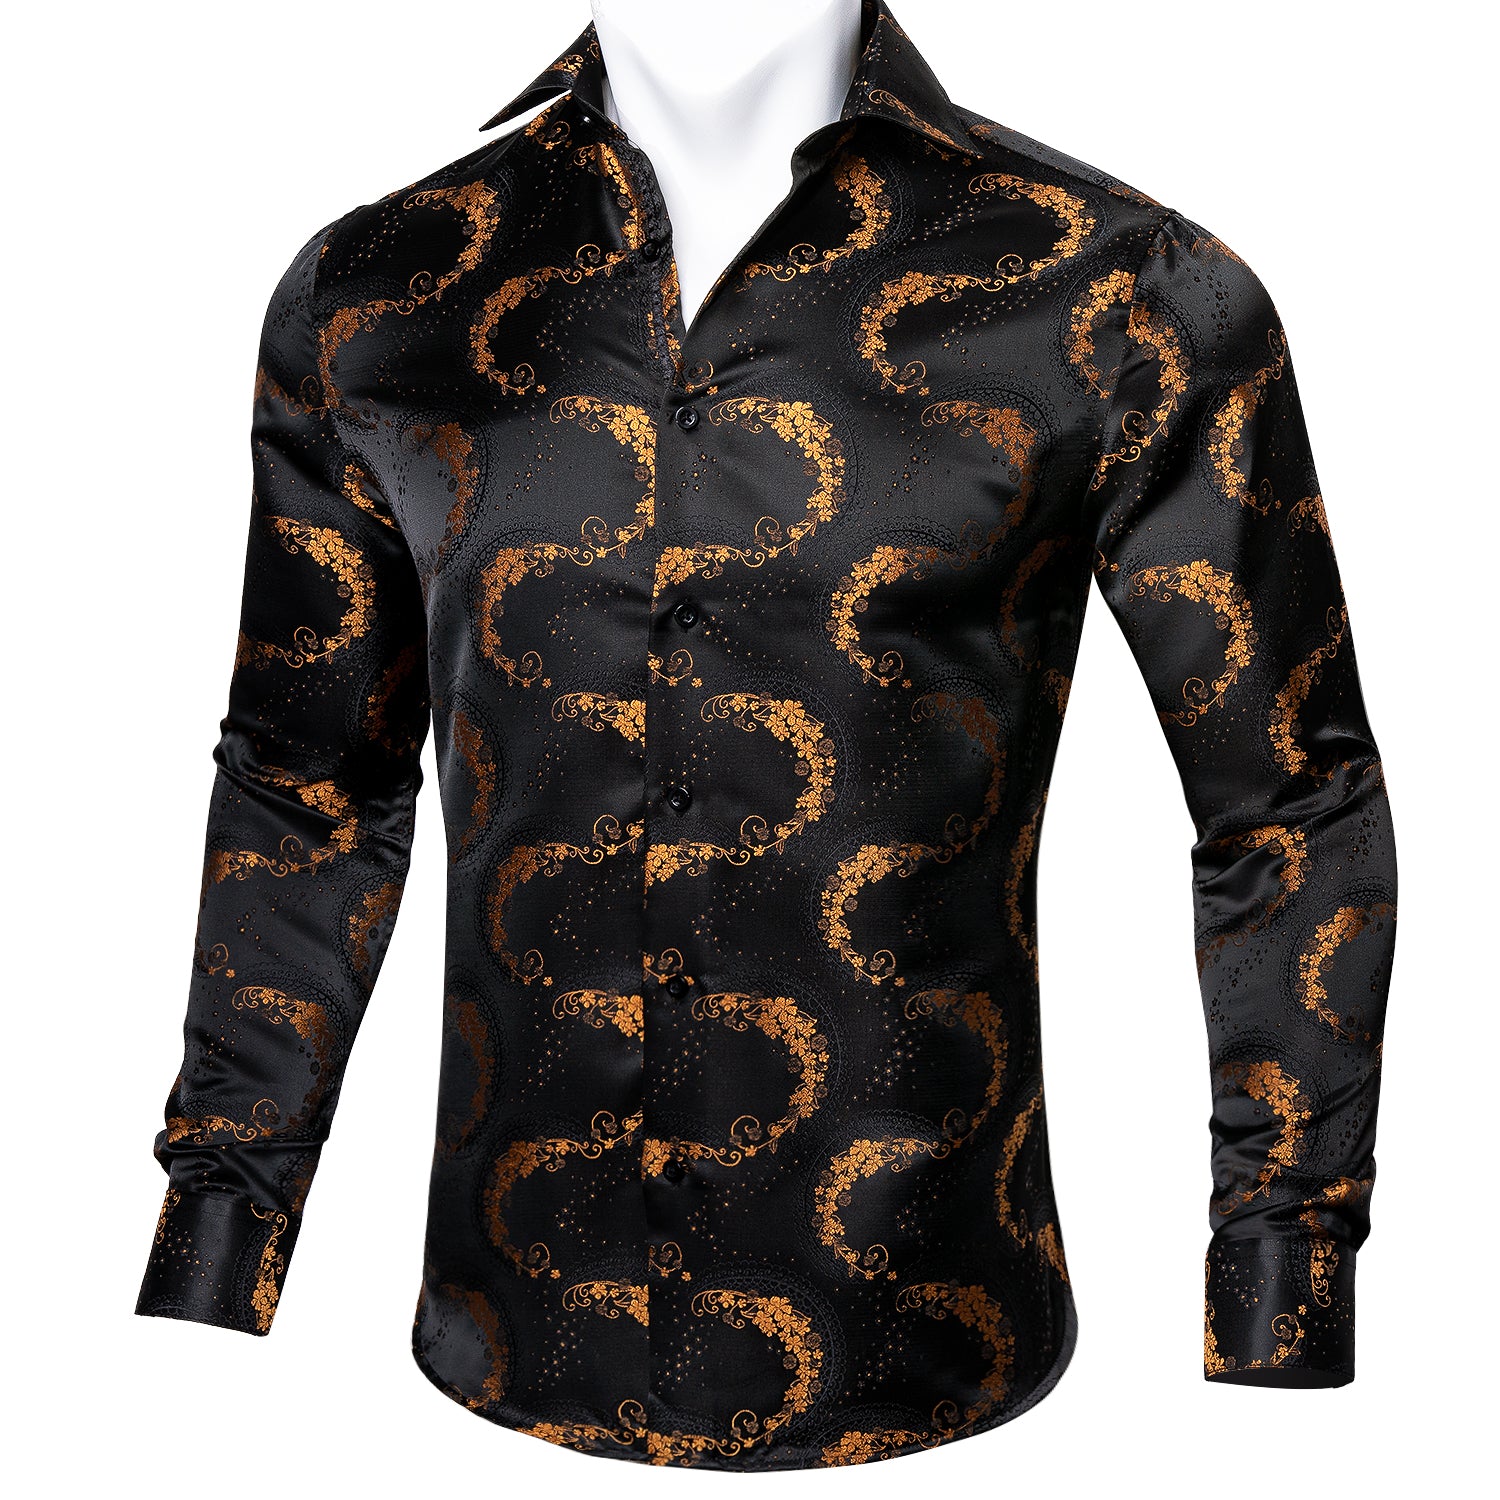 Barry.wang Men's Shirt Black Golden Floral Silk Floral Button Up Shirt